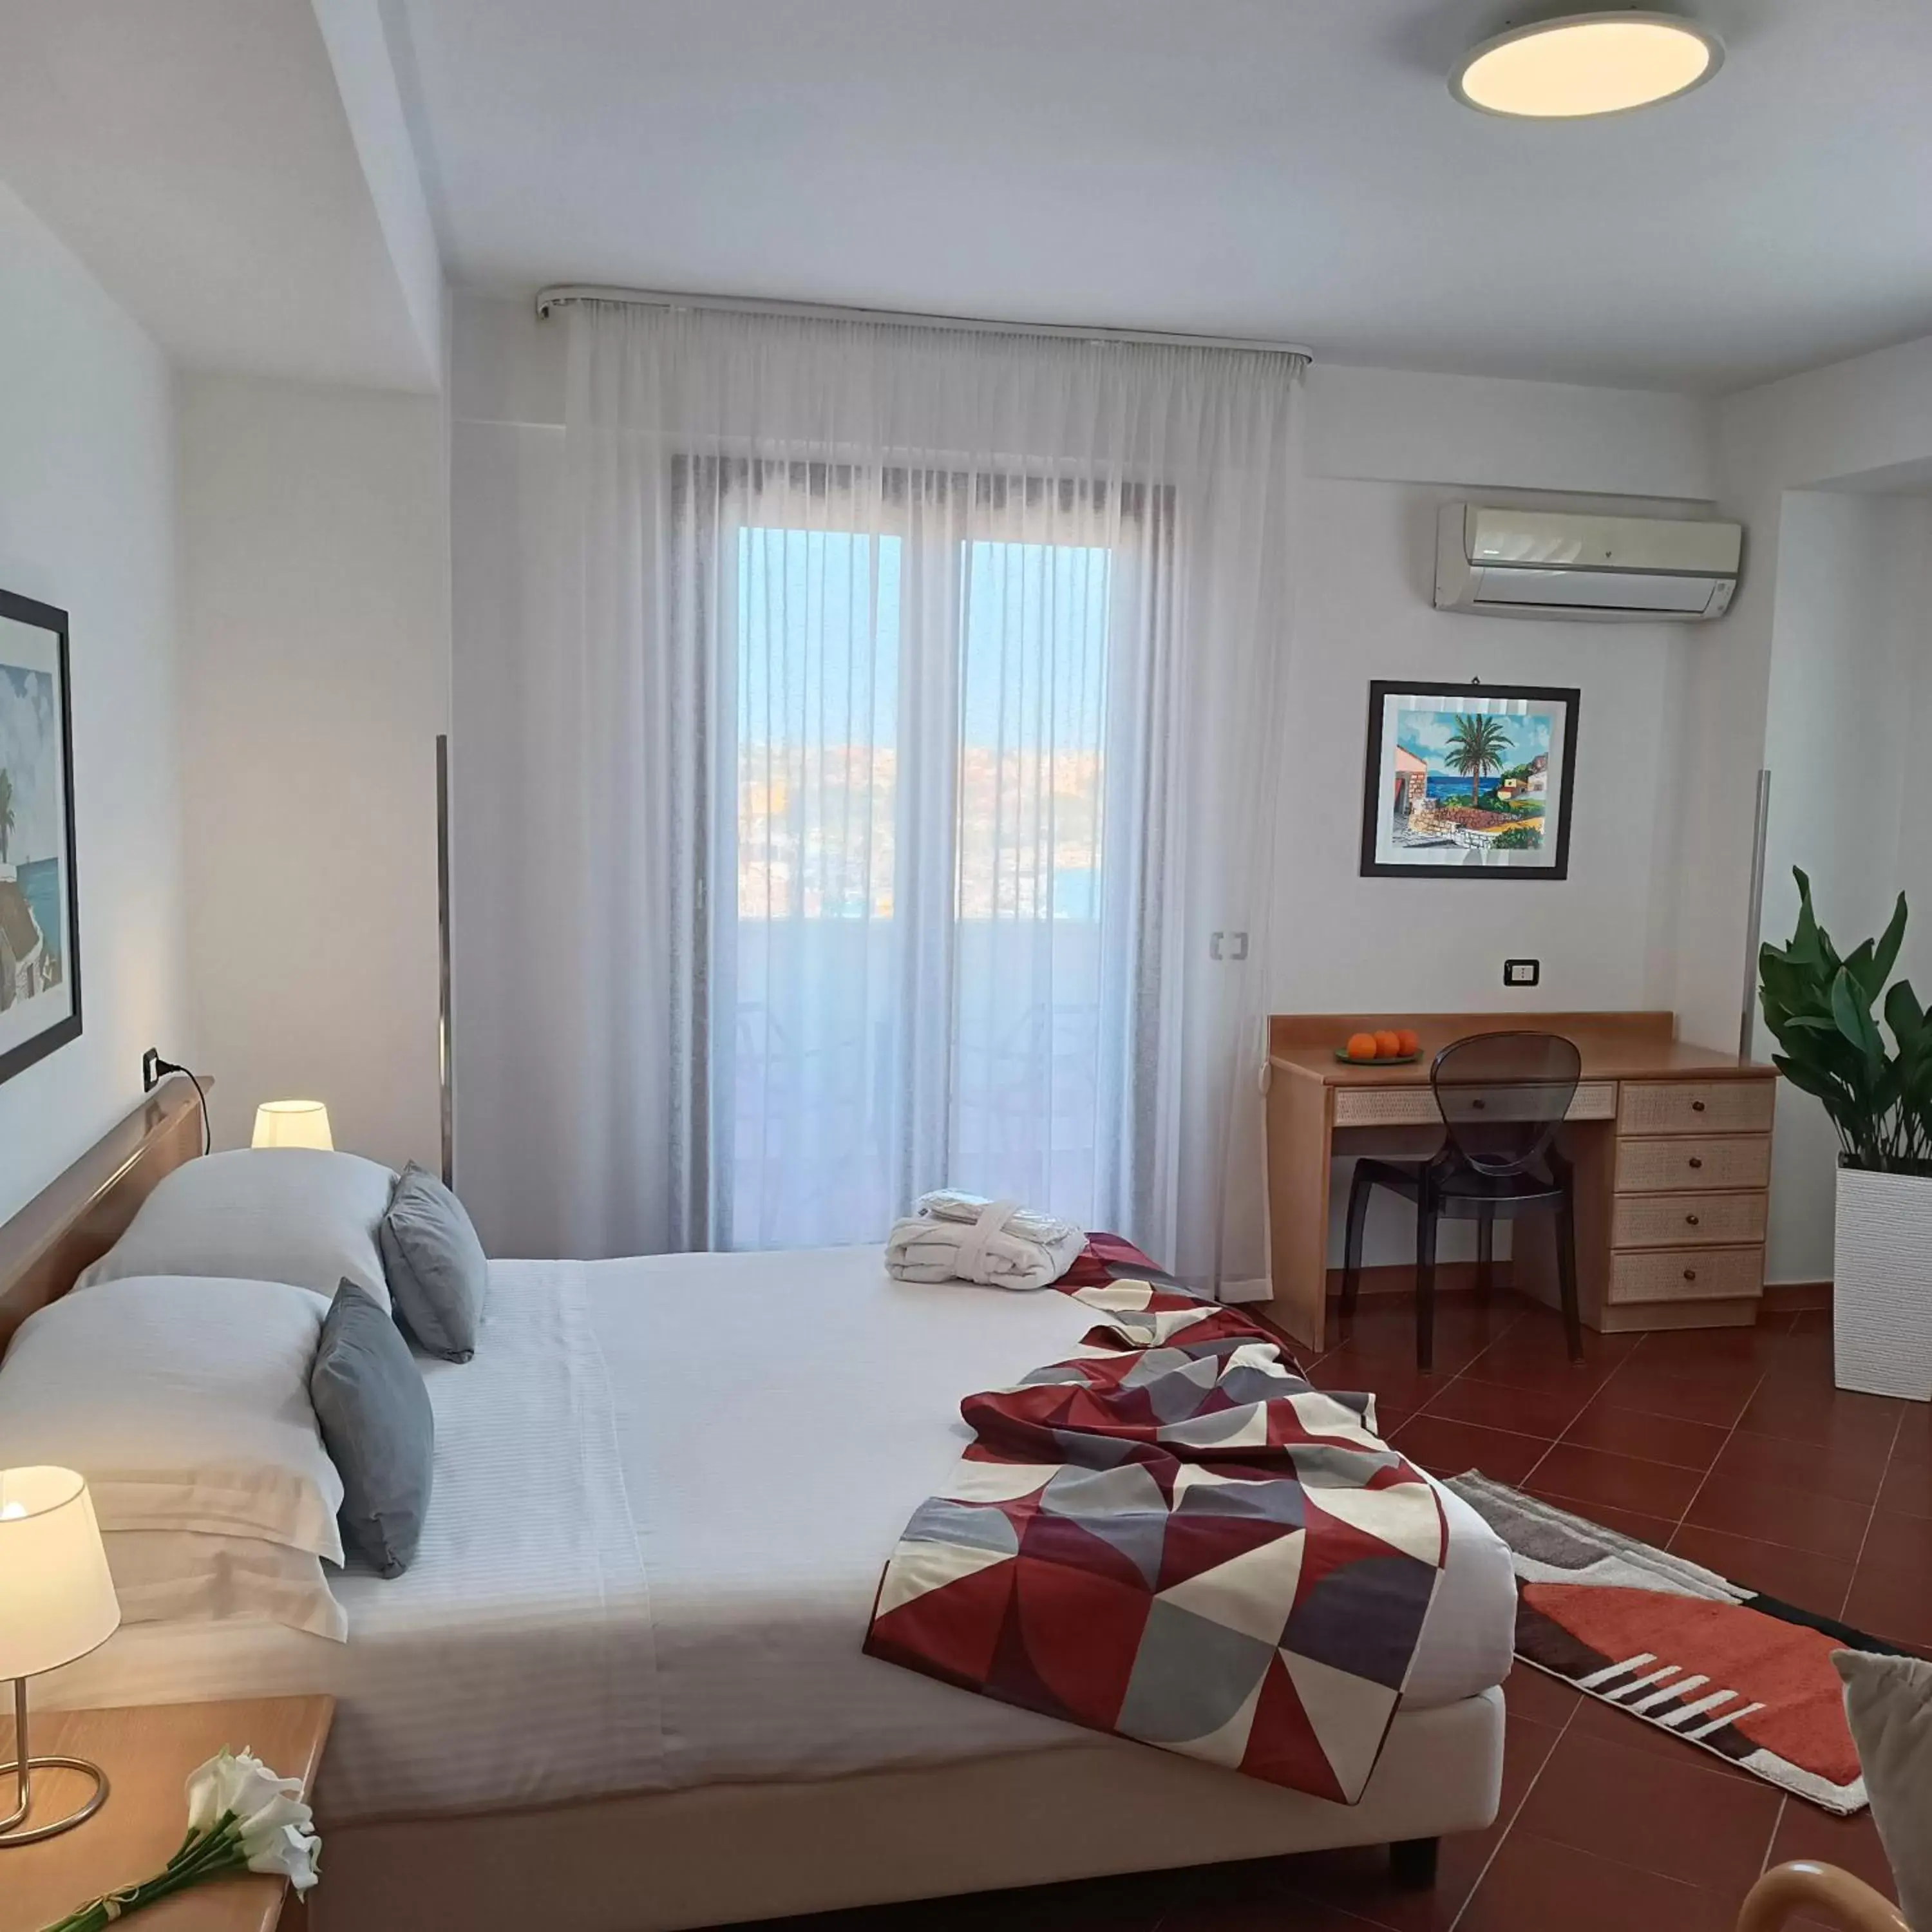 Bedroom, Bed in Best Western Hotel Martello